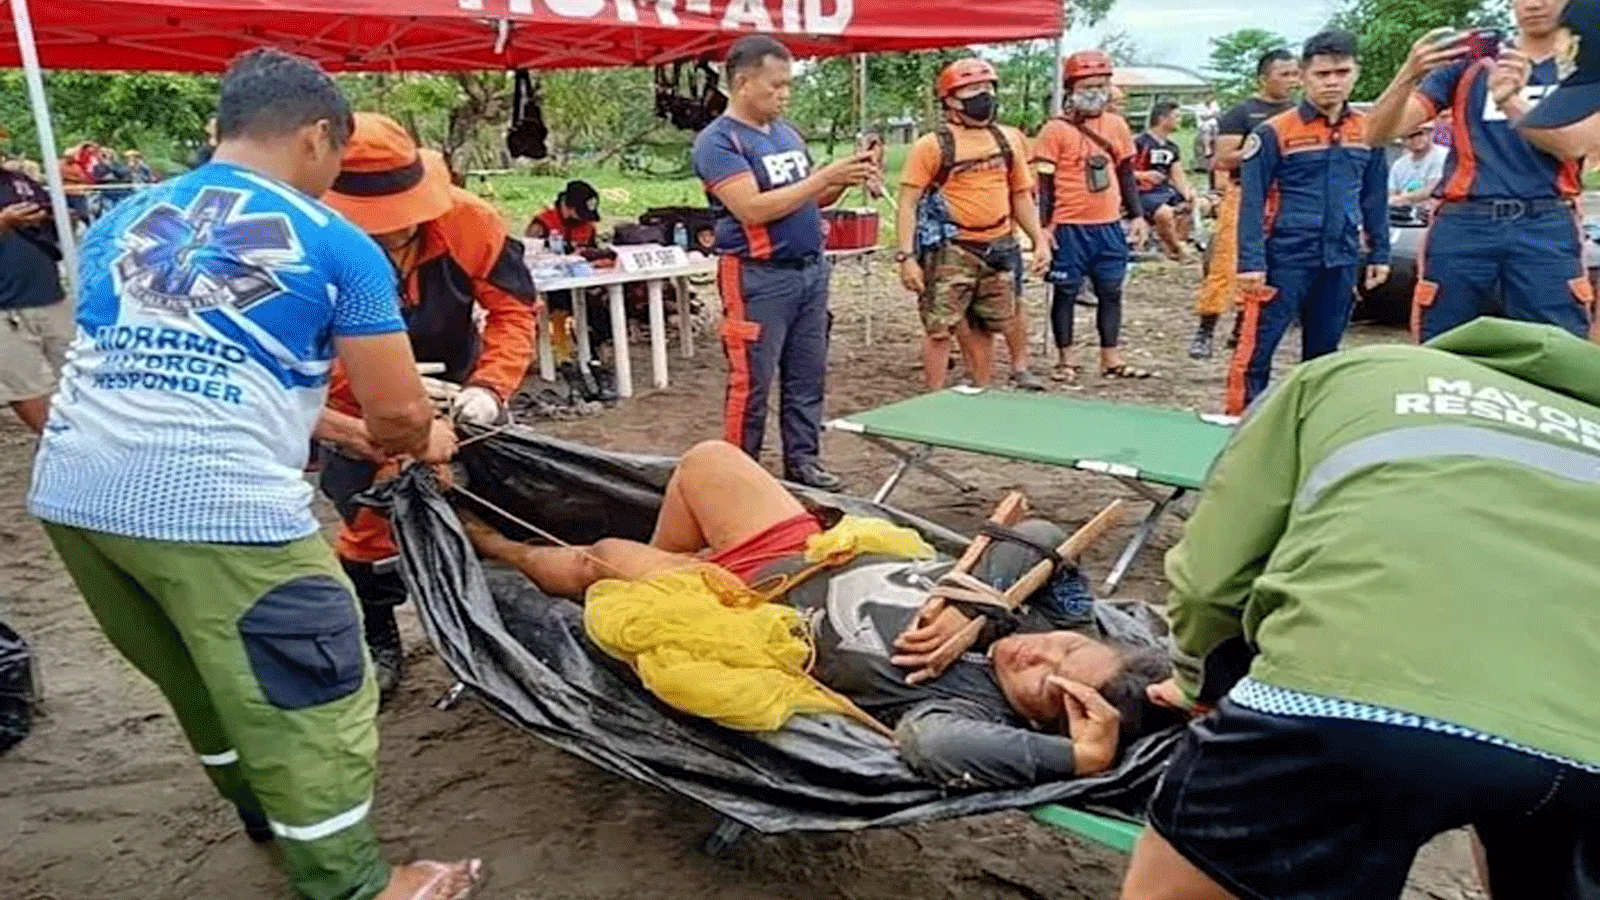  الجيش الفيلبيني يساعد في عمليات البحث والإنقاذ التي أعاقتها الأحوال الجوية السيئة